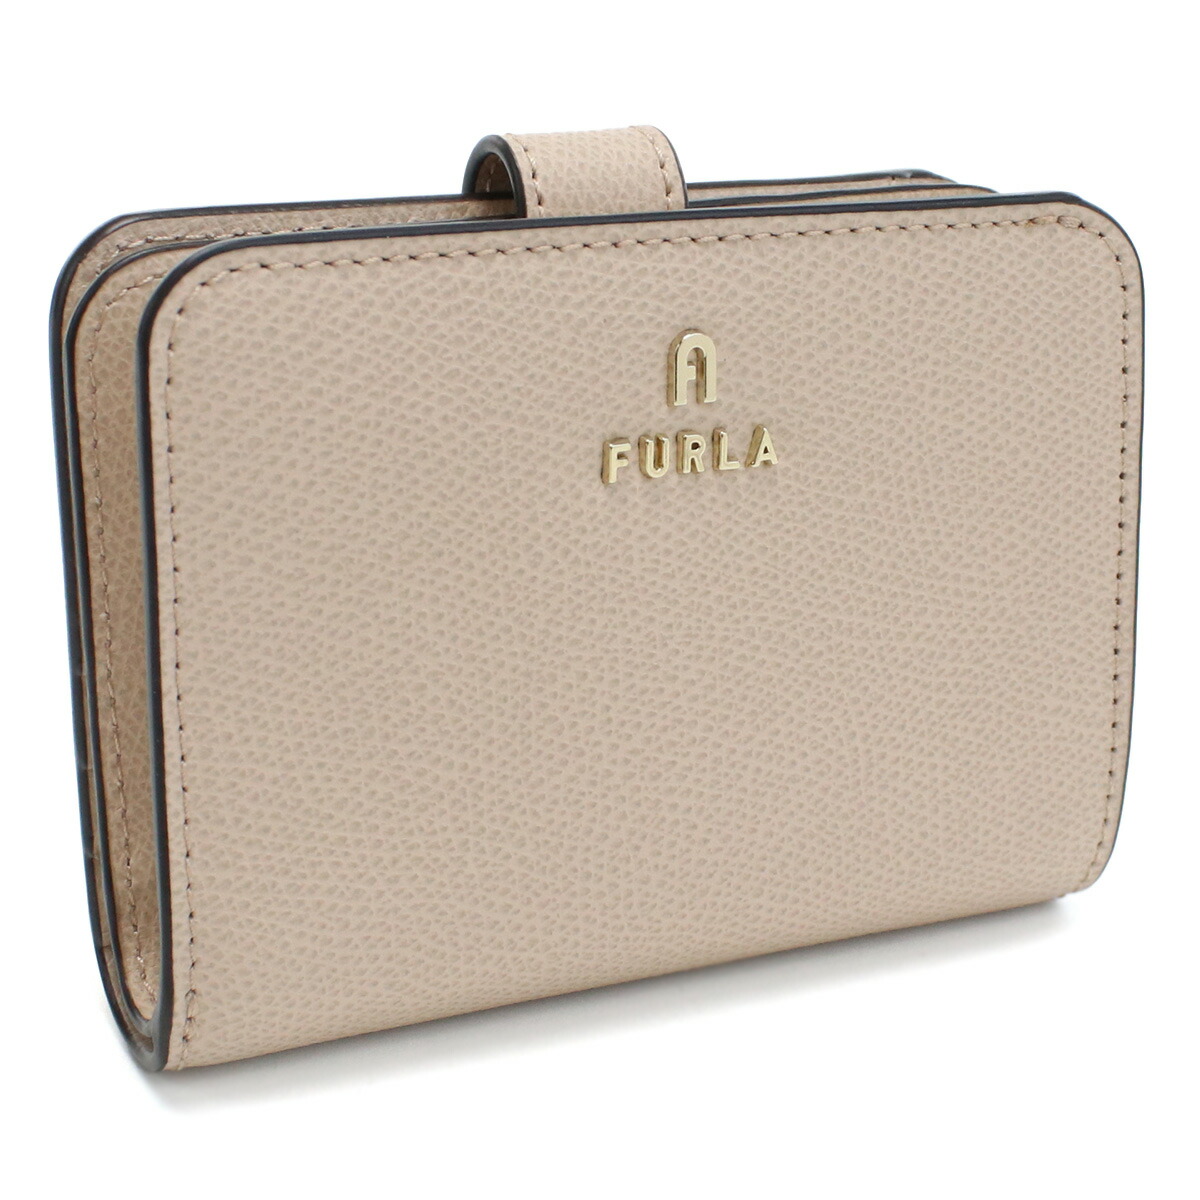 メーカーブランド名フルラ新品 2つ折り財布 ミニ財布 FURLA 保存袋付き